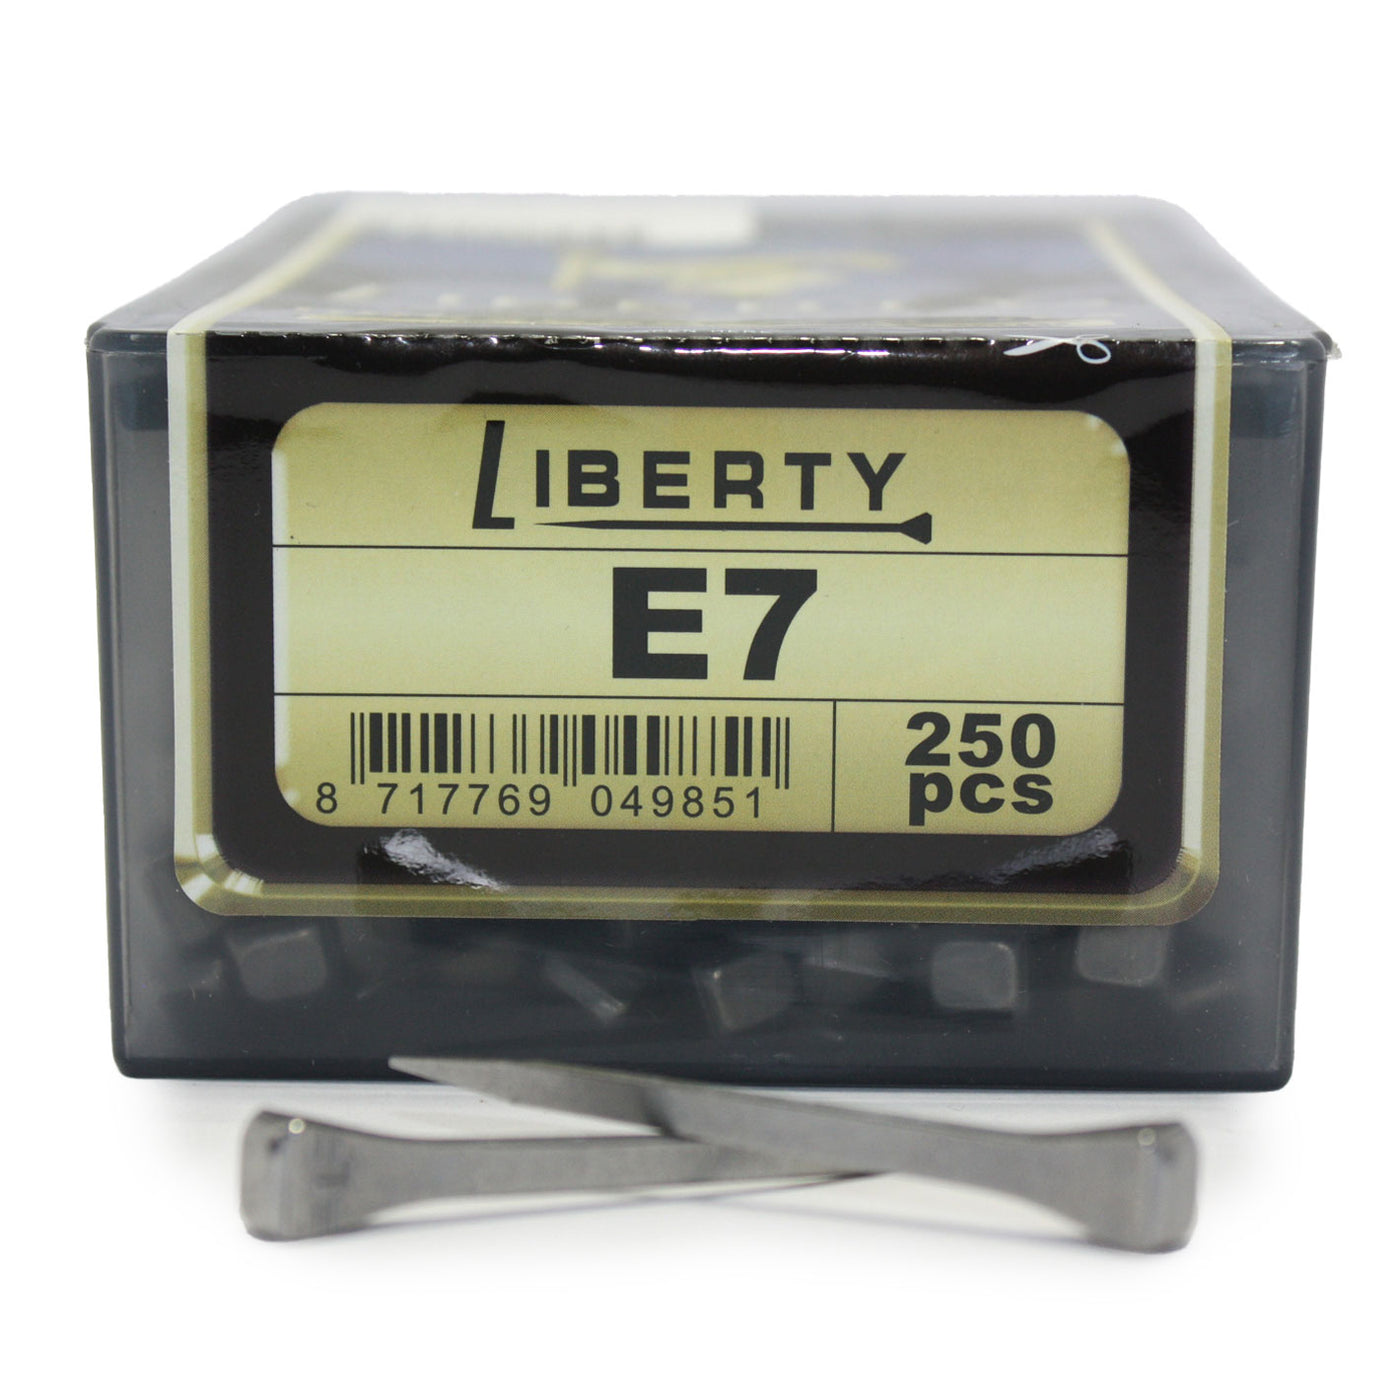 Liberty E7 250pcs